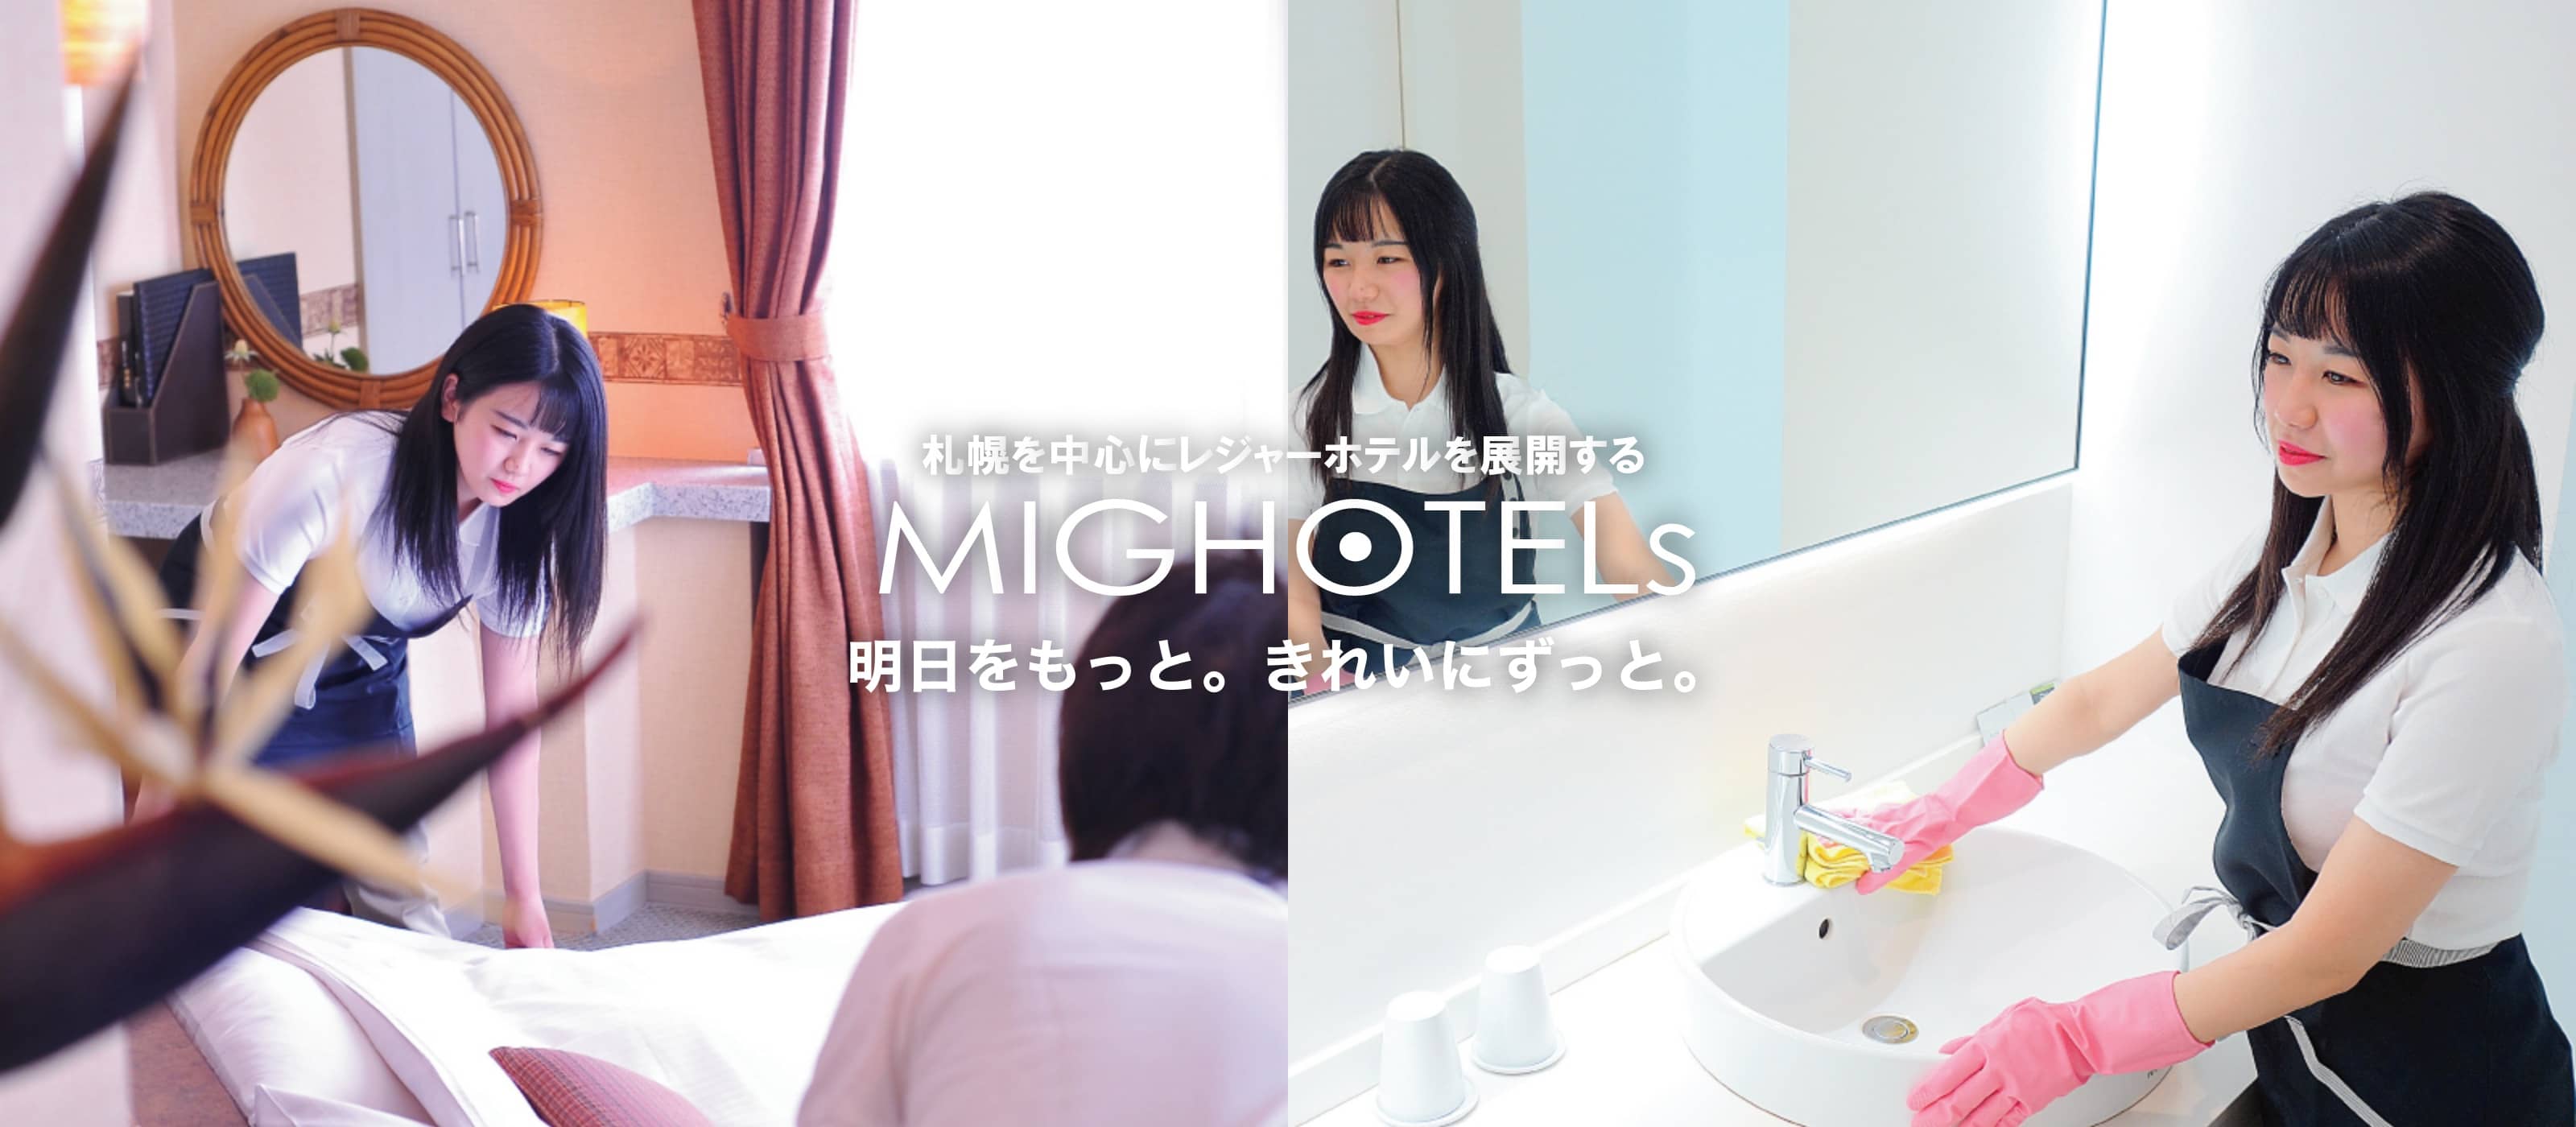 札幌を中心にレジャーホテルを展開する MIG HOTELs キレイを おもてなしに